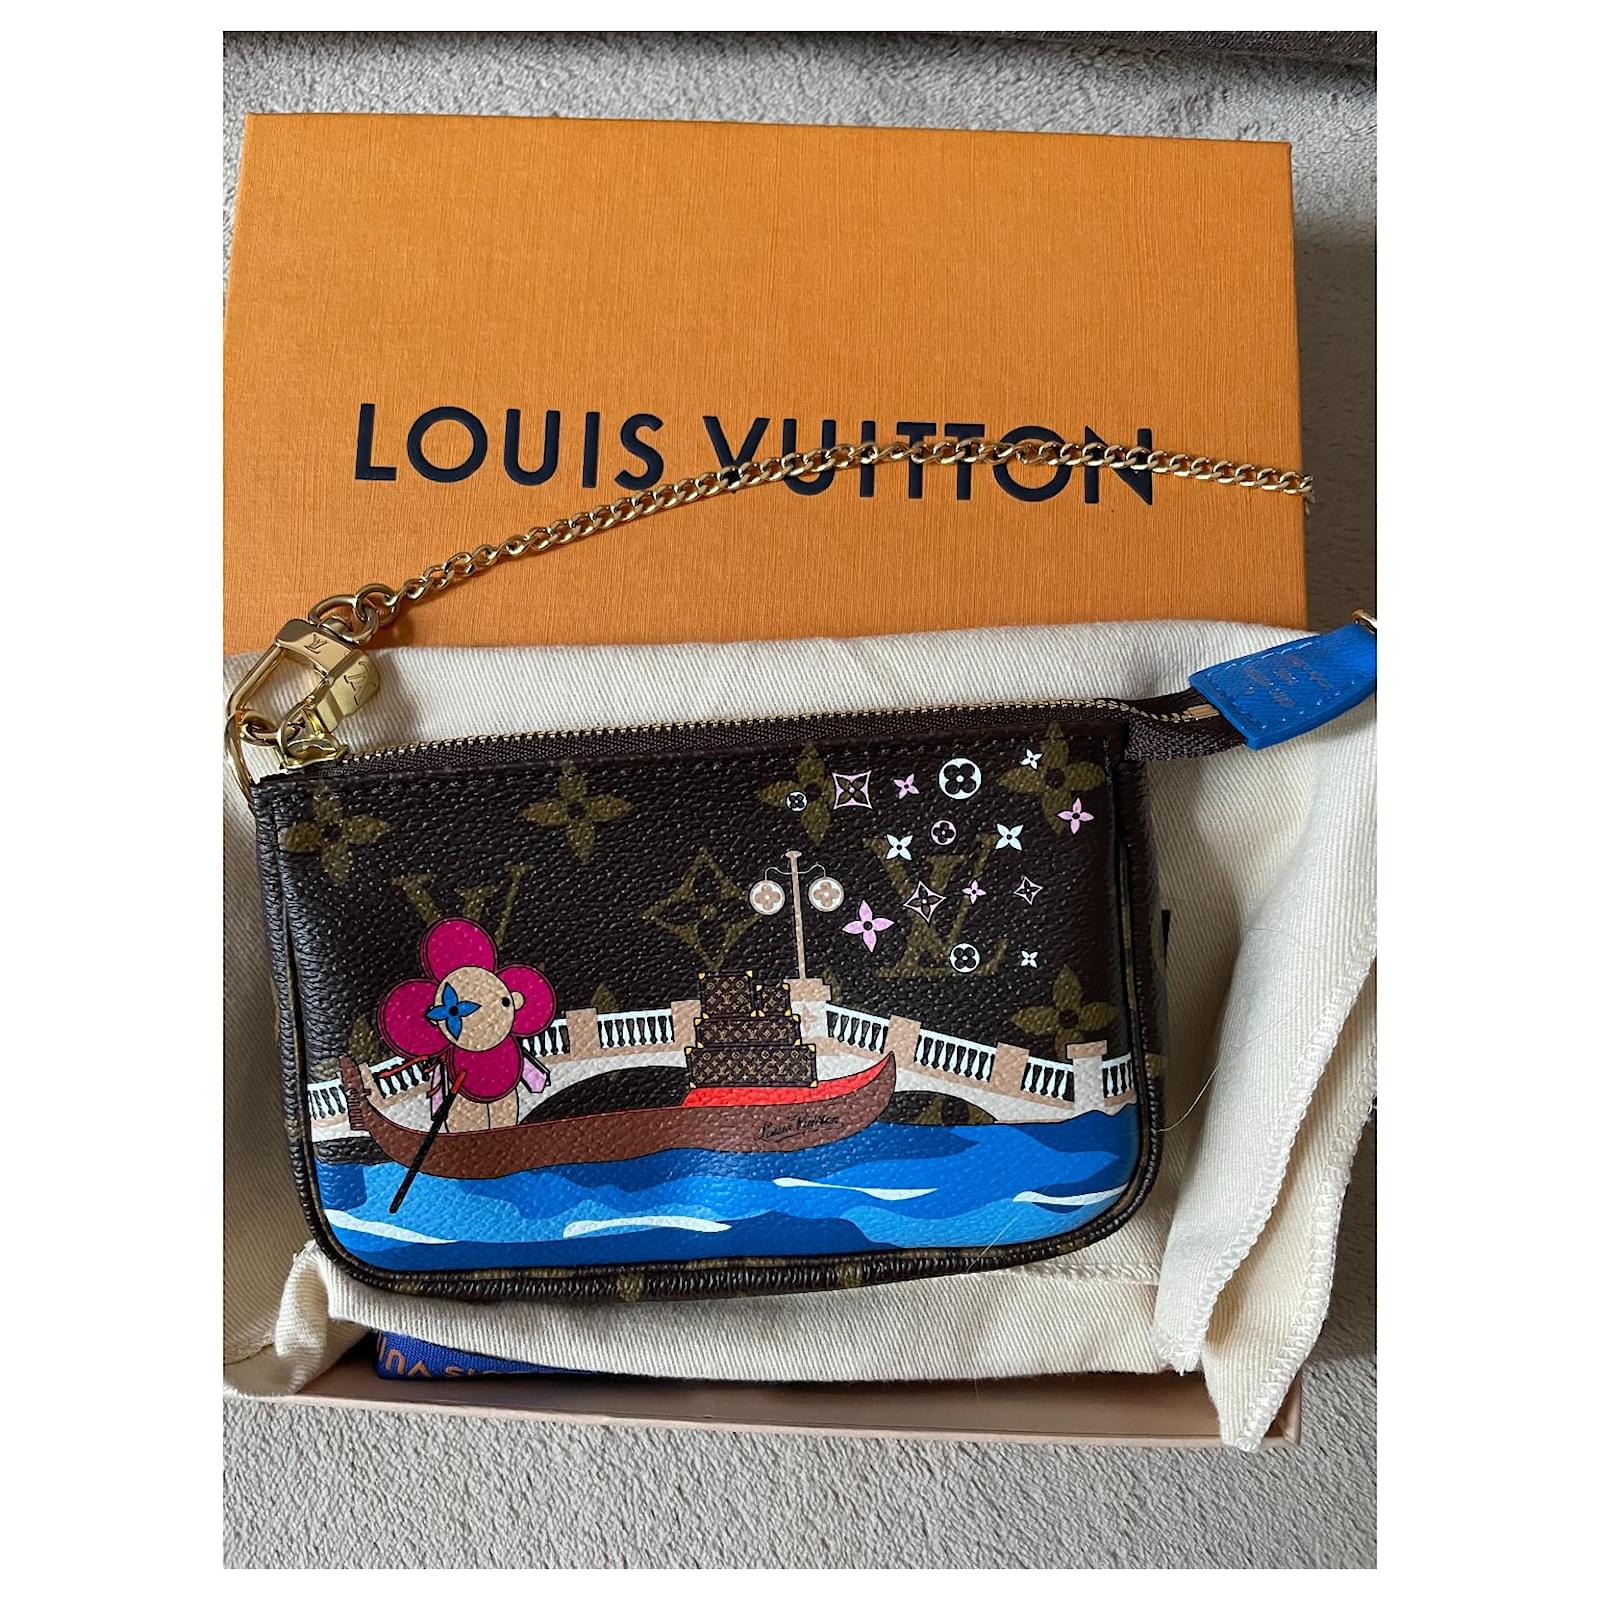 Louis vuitton Christmas mini clutch 2019 Vivienne Venice Brown